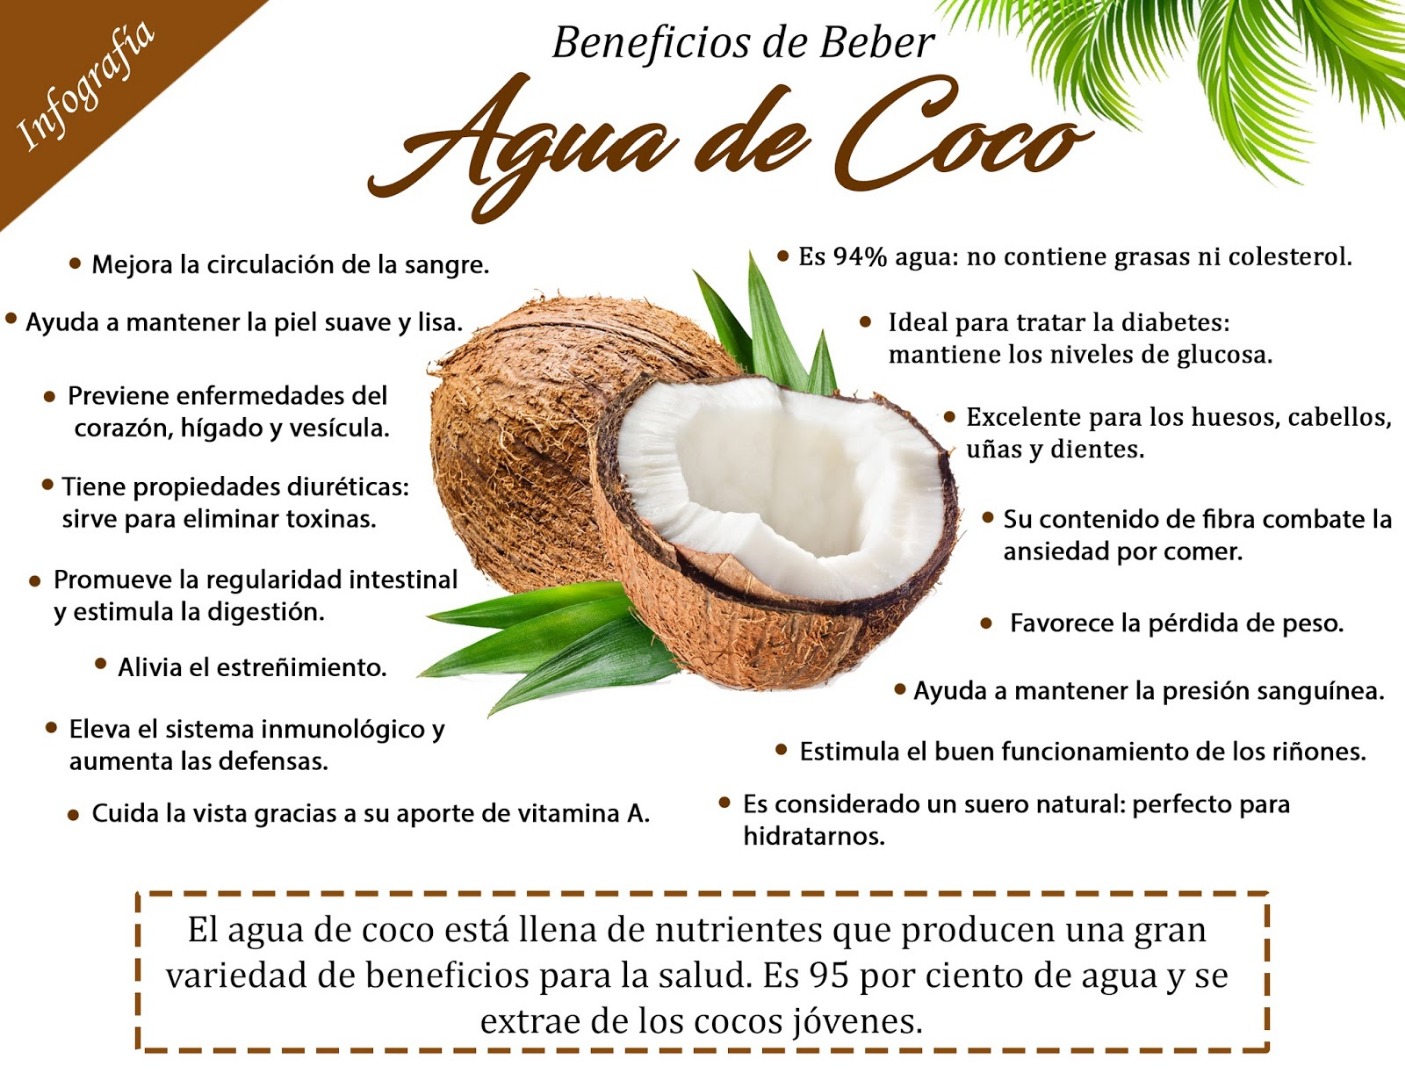 7 formas efectivas de conservar el agua de coco natural y aprovechar todos sus beneficios